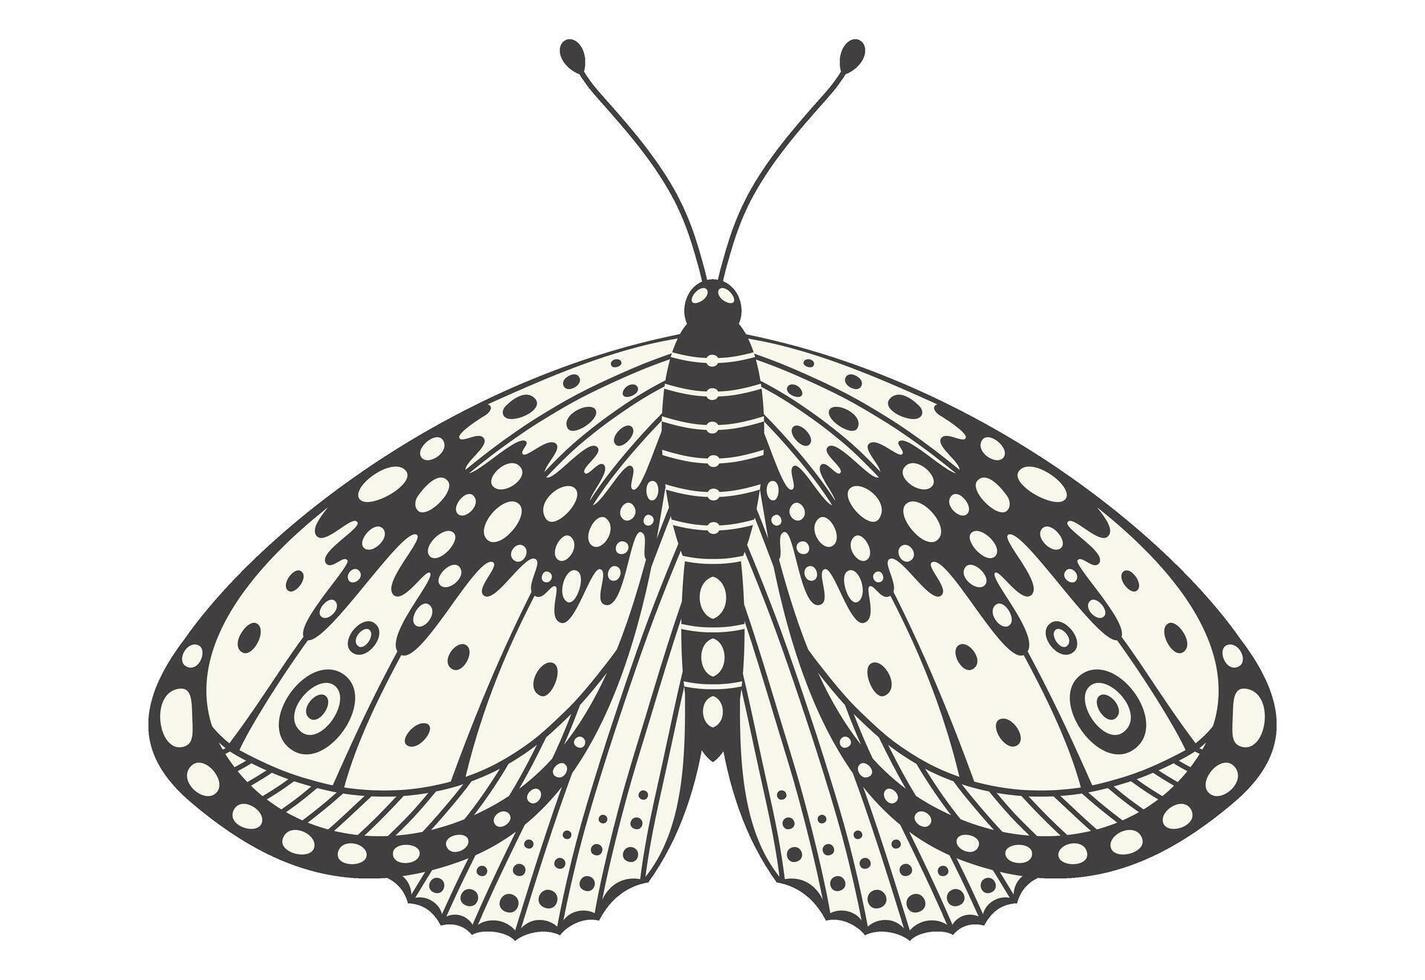 fjäril eller fjäril illustration. y2k stil estetisk, vinge former i främre se, en magi dekorativ symbol. svart och vit element, tatuering grafisk skriva ut med Vinka och prickar abstrakt mönster, vektor